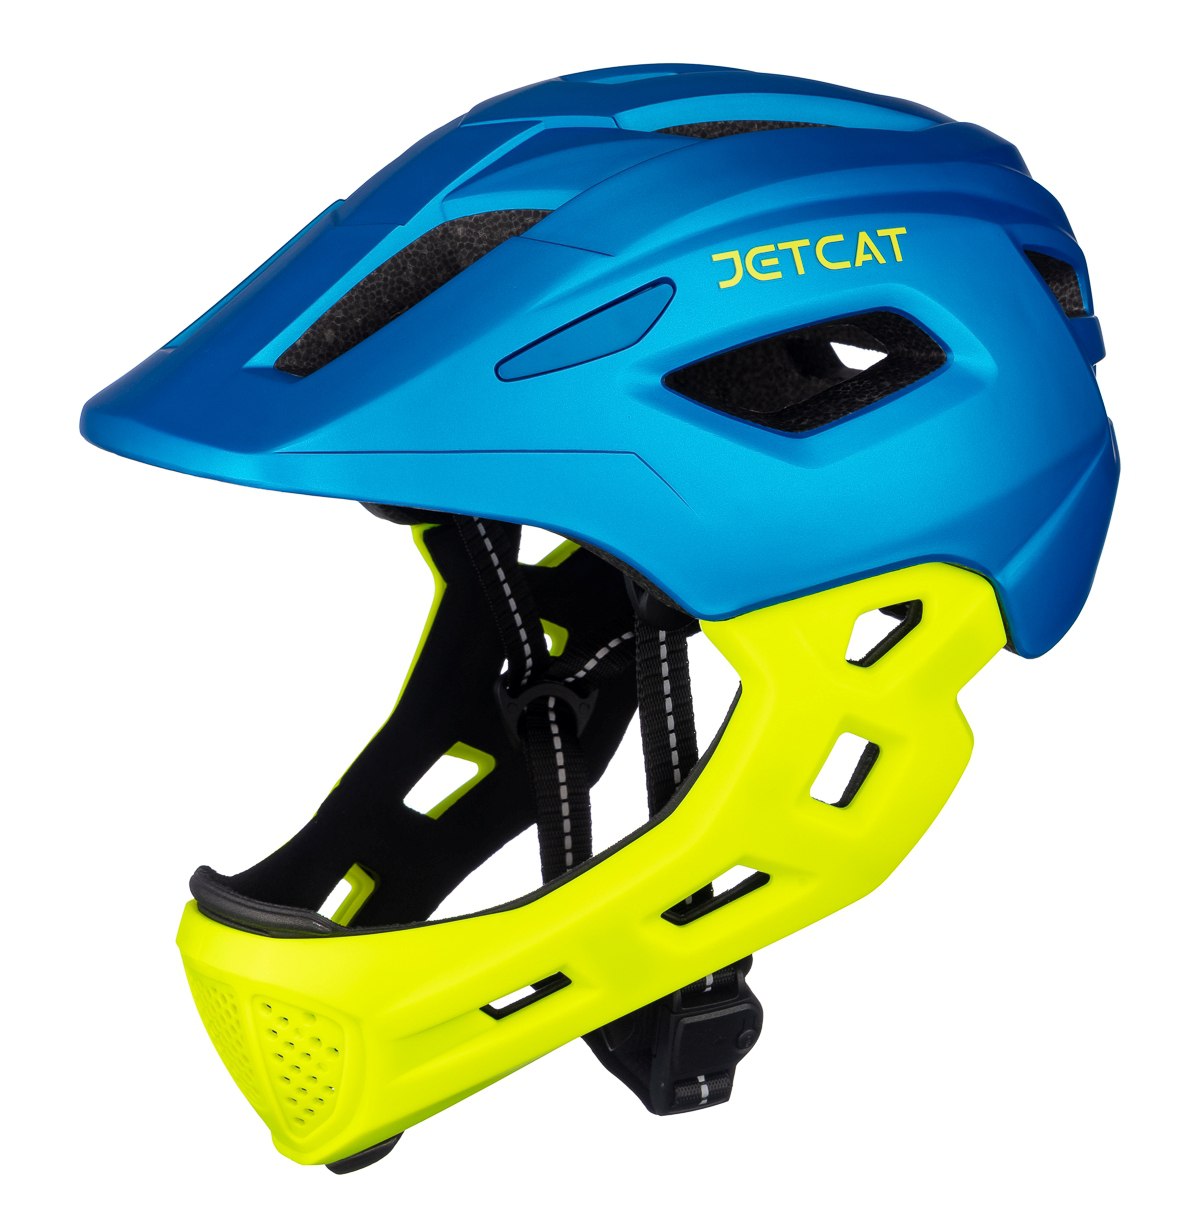 Шлем защитный детский JetCat Start Blue/Green размер S 52-56 см велосипедный alpina шлем защитный alpina pico flash a976271 зеленый ростовка 50 55 см